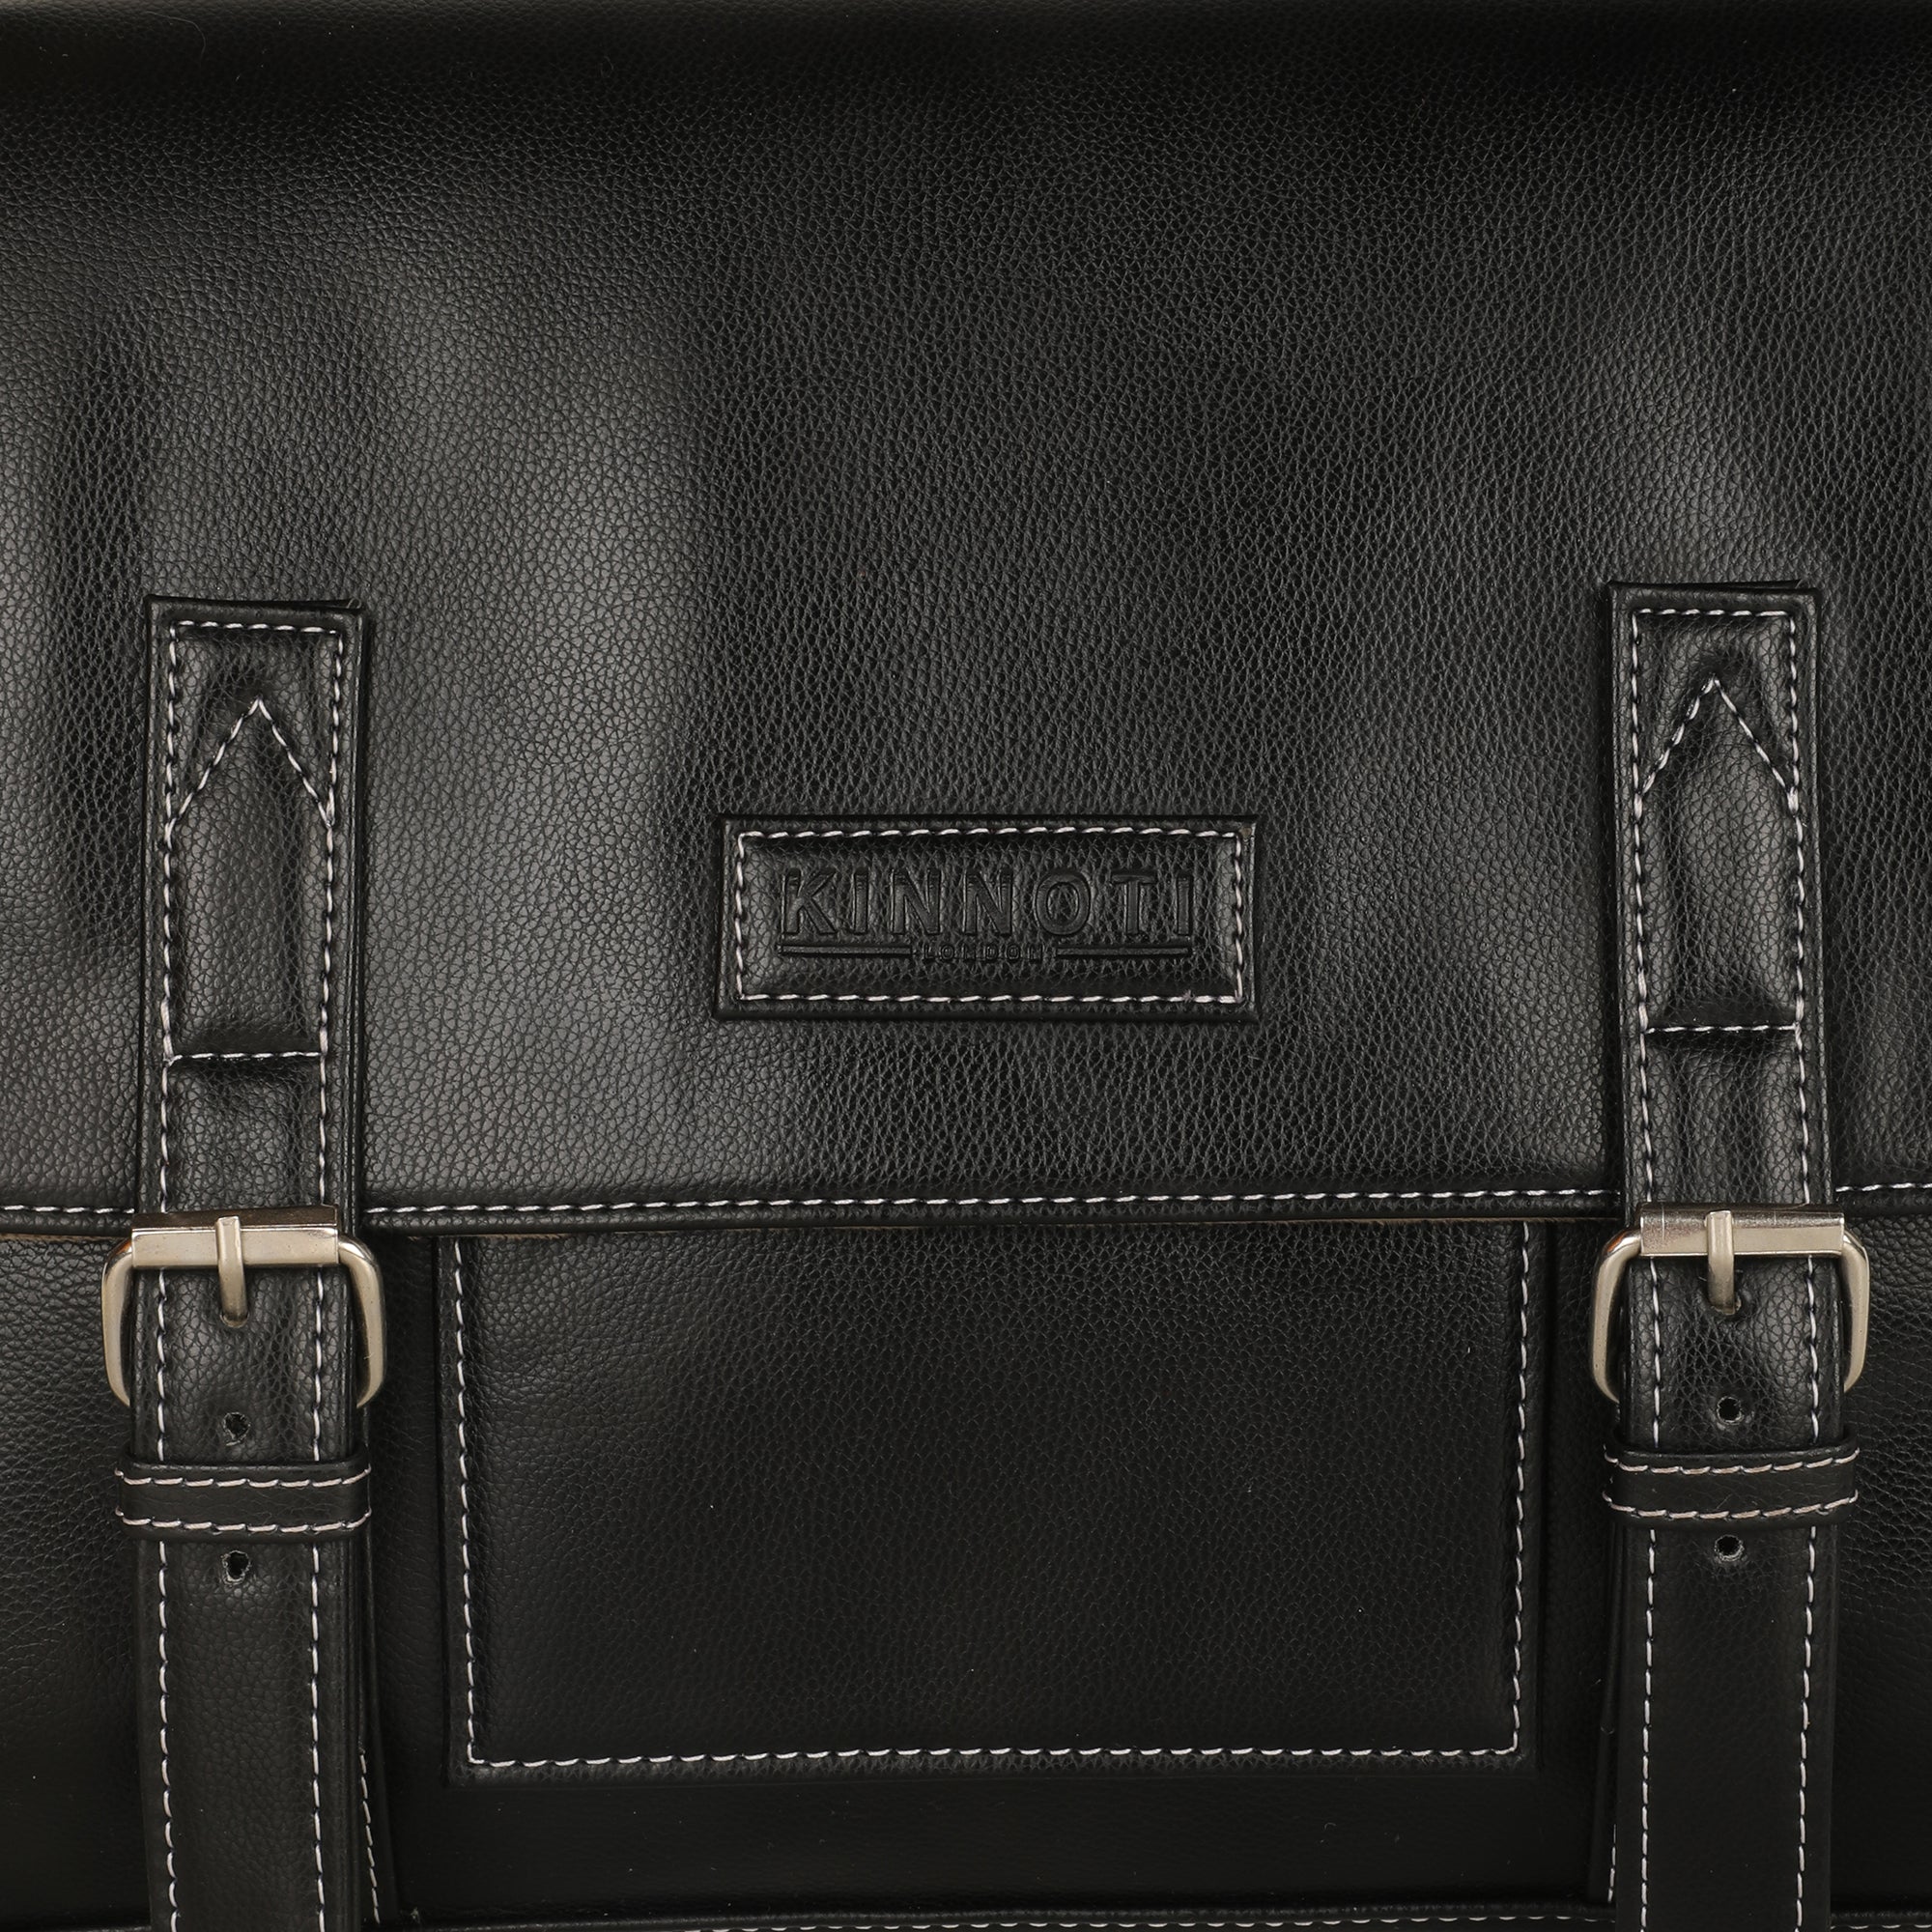 Black Men's Vegan Leather Messenger Bag with Adjustable Shoulder Strap